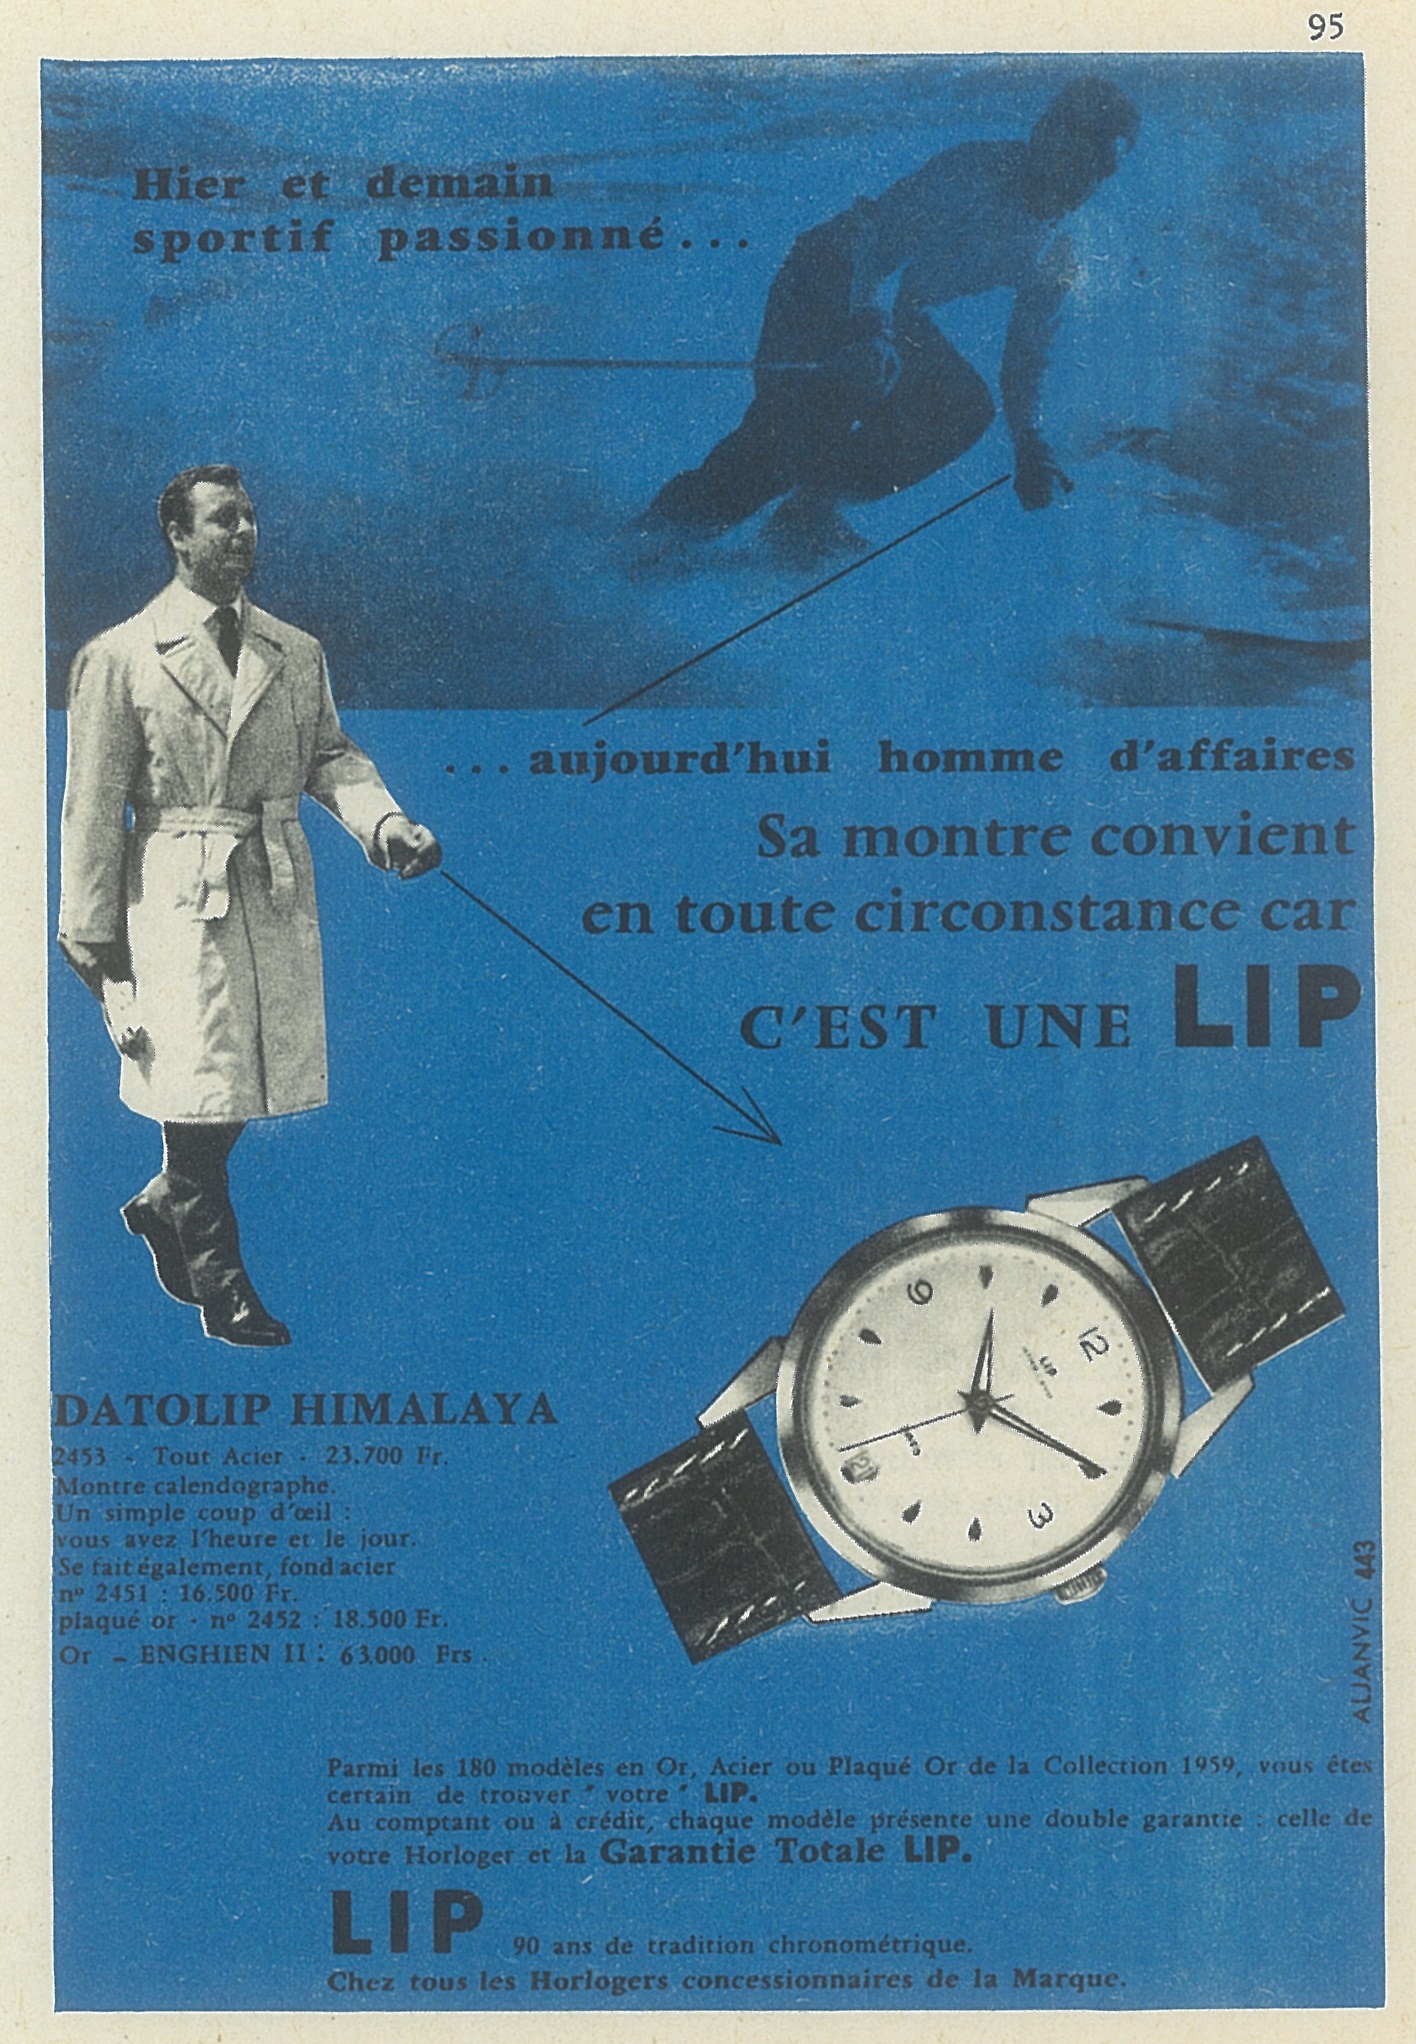 Publicité Pub montre Lip Himalaya R23 C dato plaquée or de 1959 @HAOND Clément